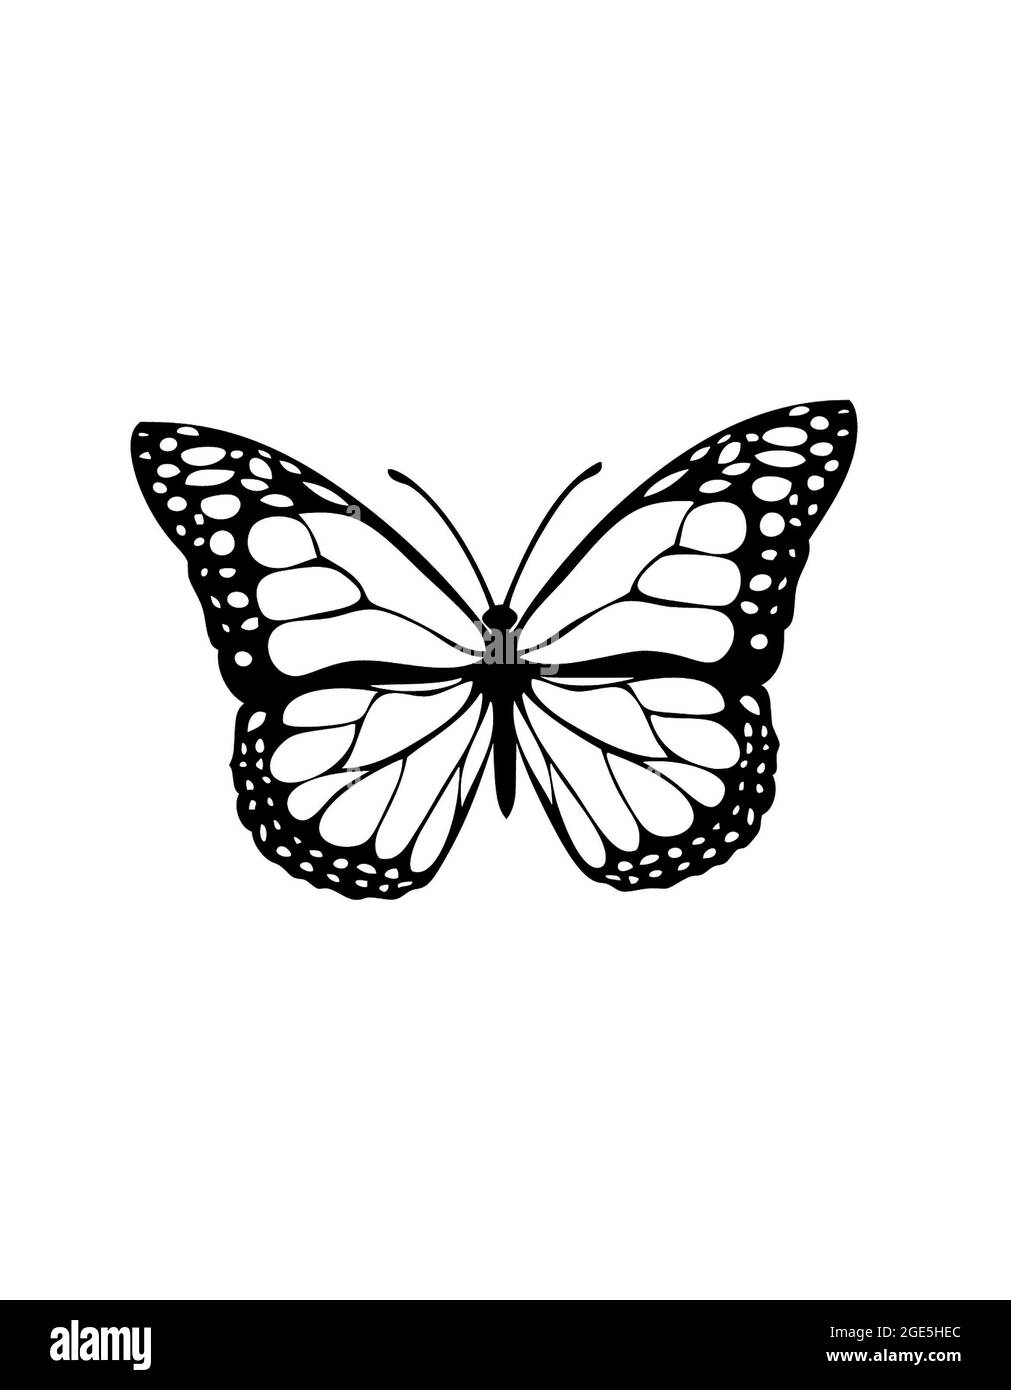 Insectes papillons isolés sur fond blanc Banque D'Images